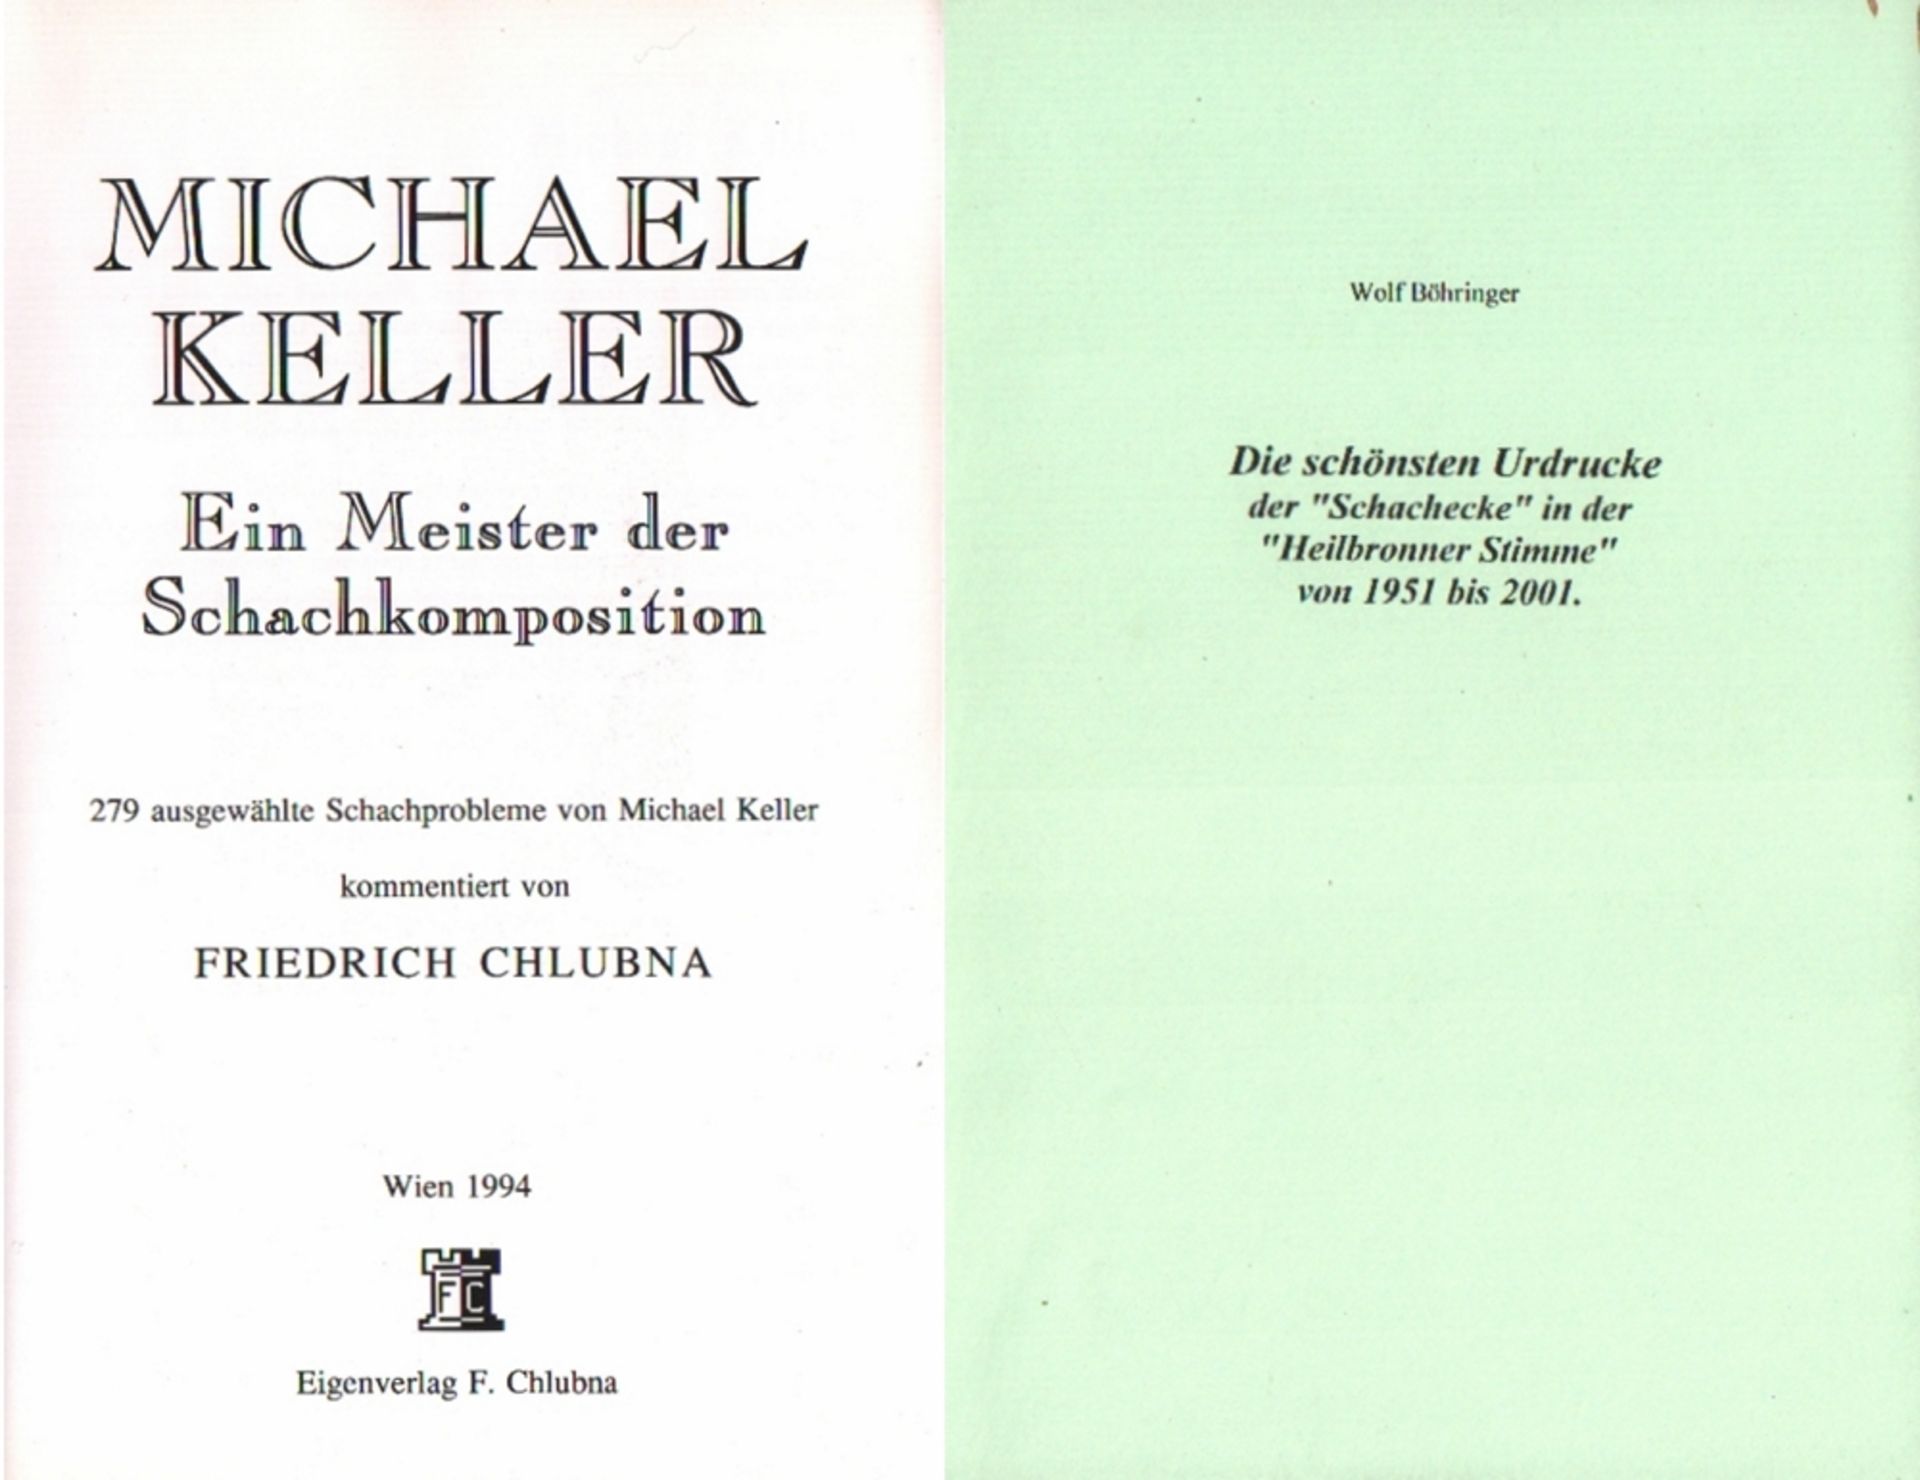 Keller. Chlubna, F. Michael Keller. Ein Meister der Schachkomposition. 279 ausgewählte